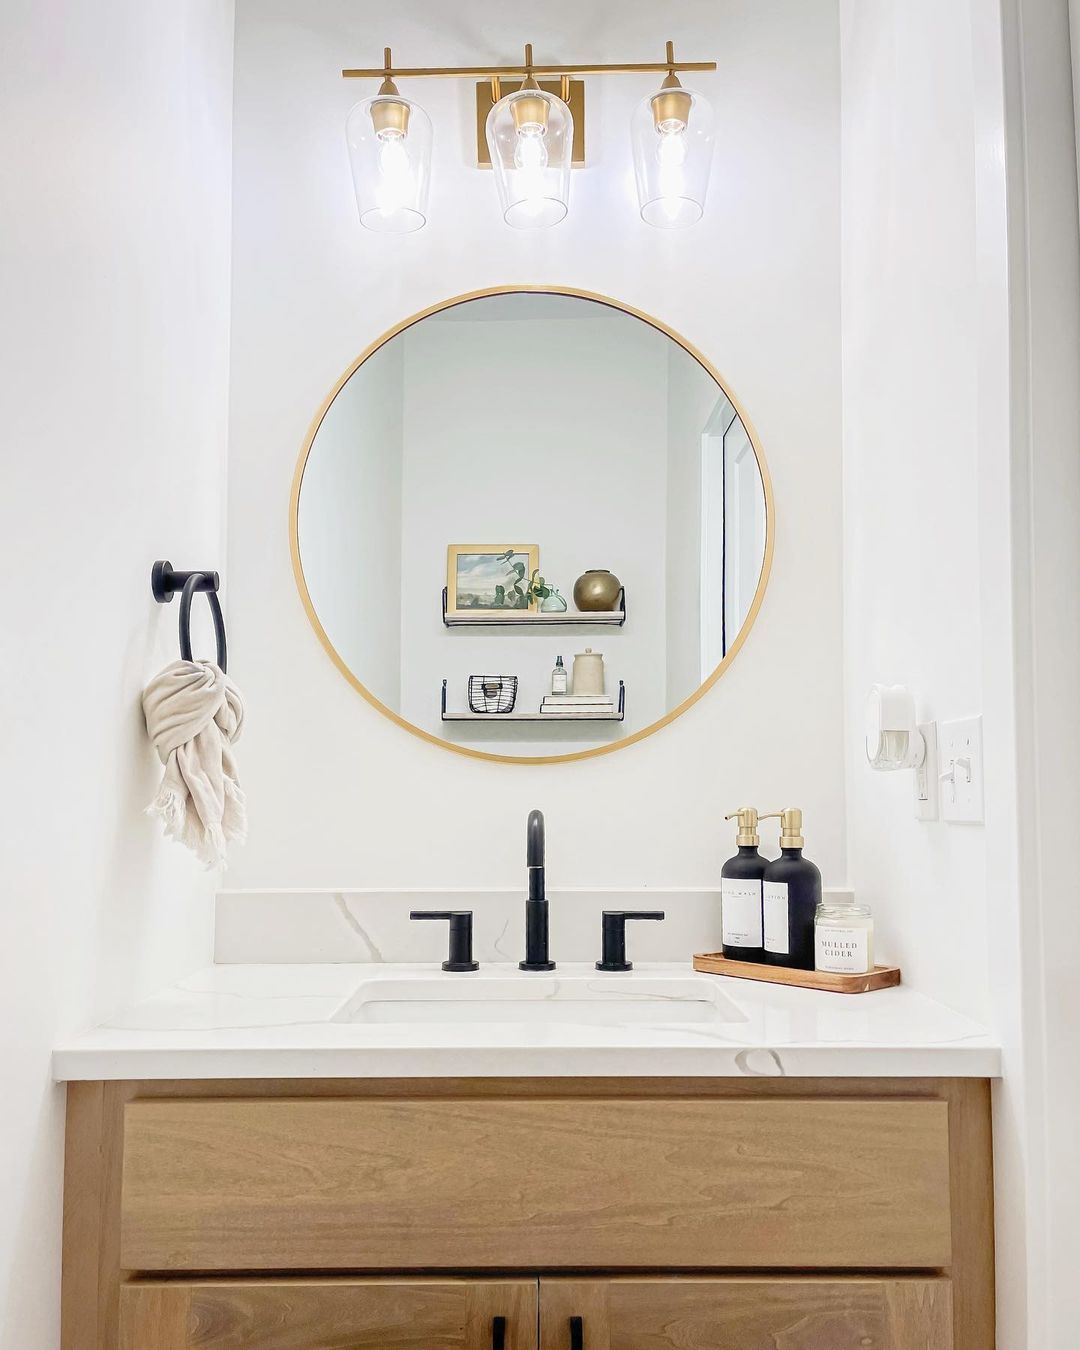 Updated Guest Bathroom with Round Mirror. Photo by Instagram user @pleasantlybuilt